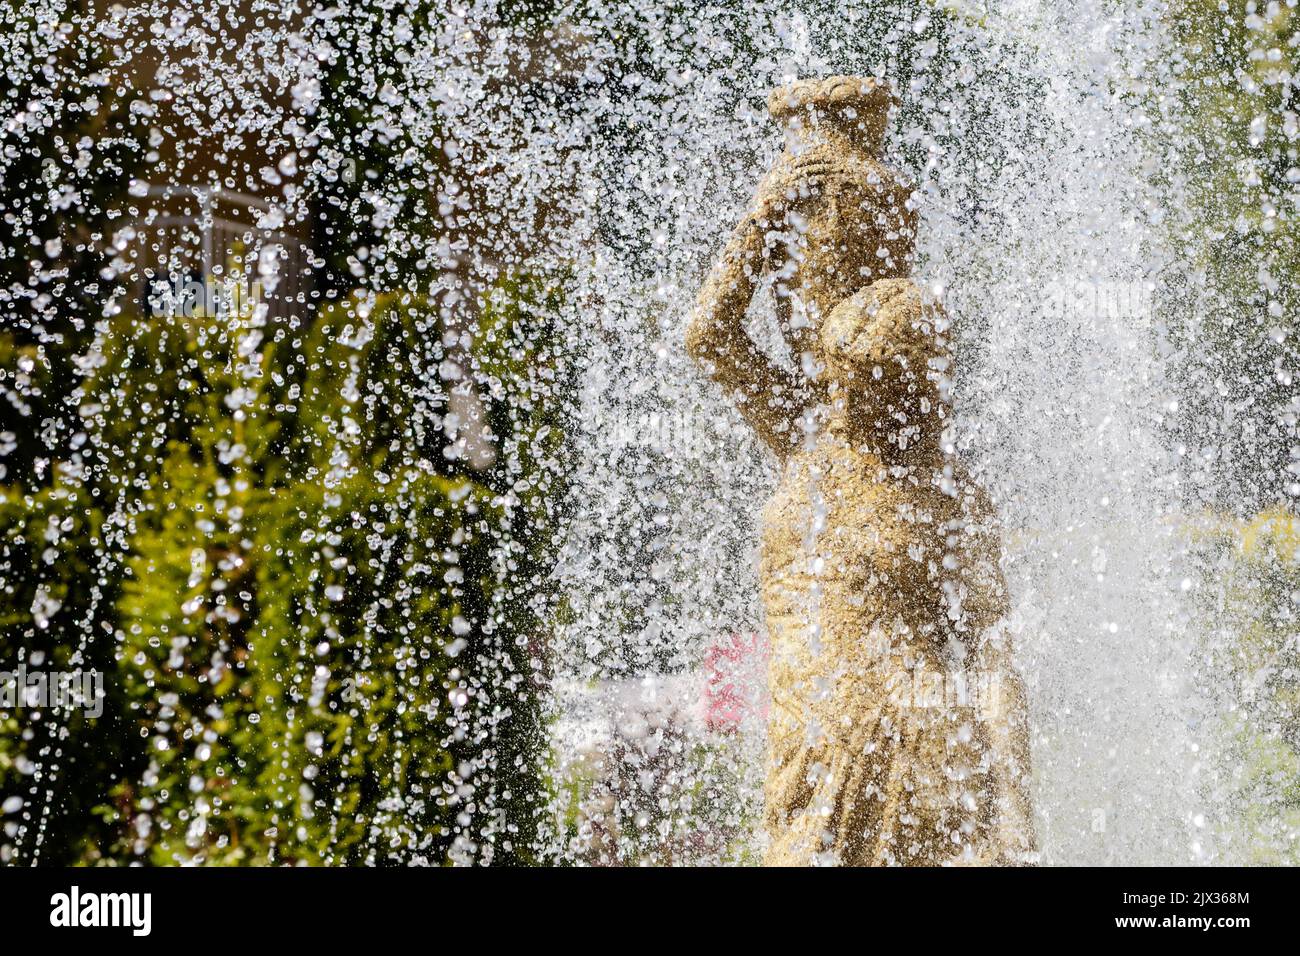 Une fontaine en gros plan coule au-dessus d'une statue de femme. Éclaboussures d'eau et sculpture en pierre d'une fille avec verseuse Banque D'Images